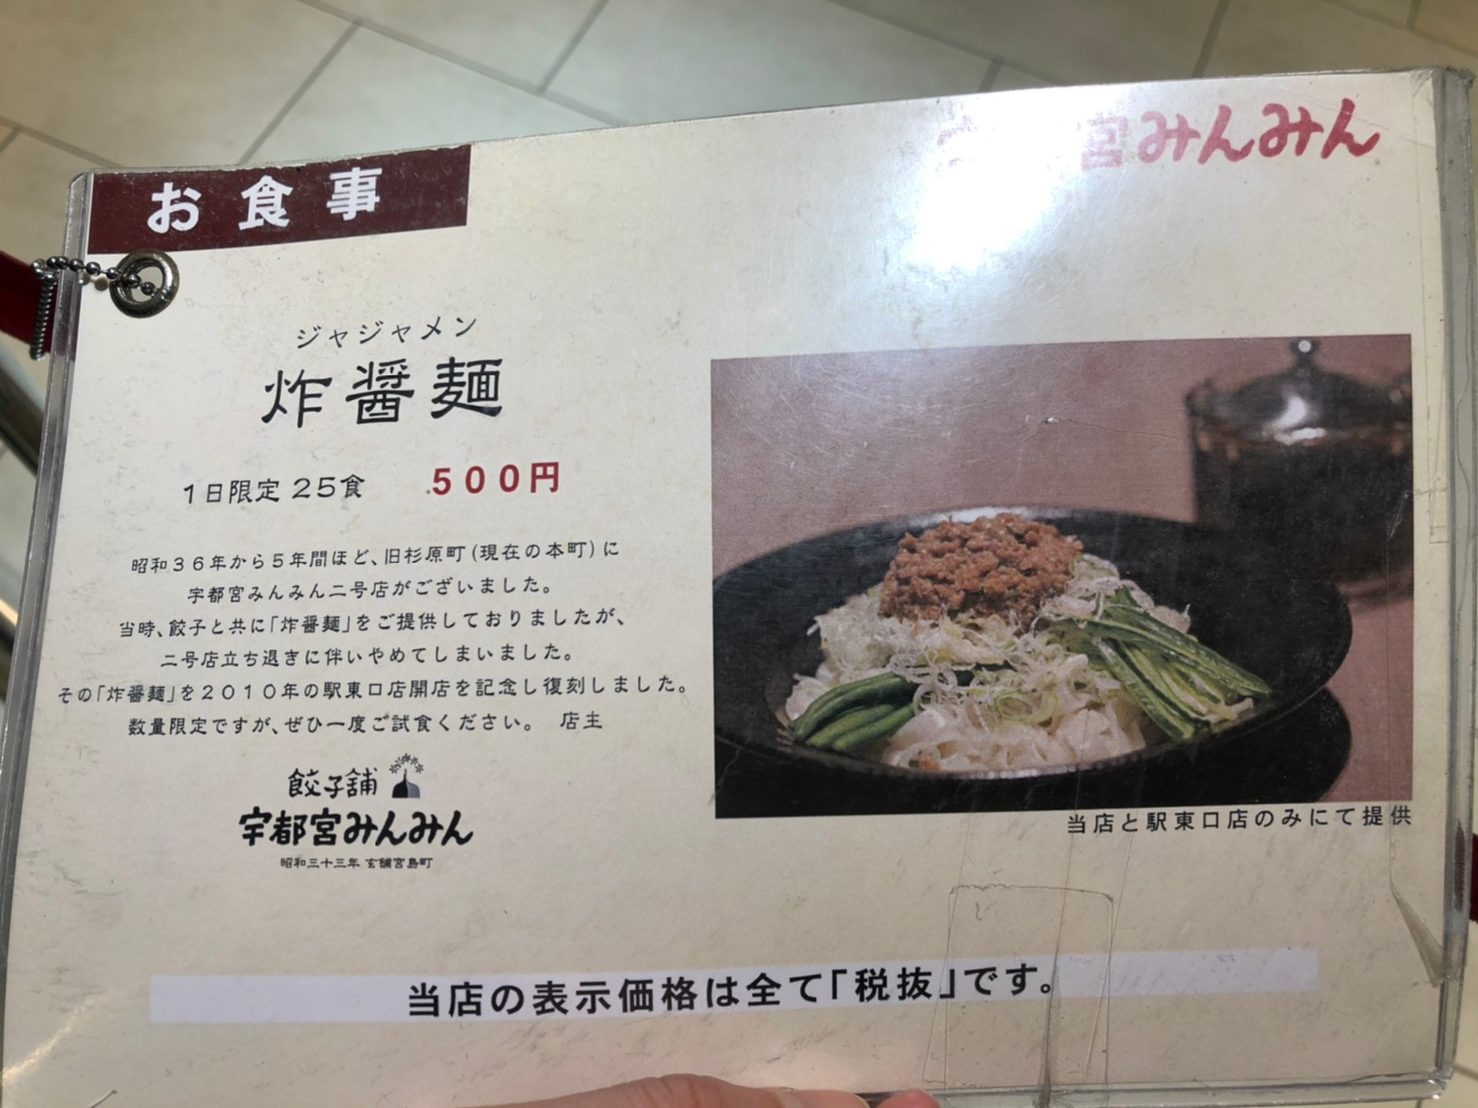 min-min menu